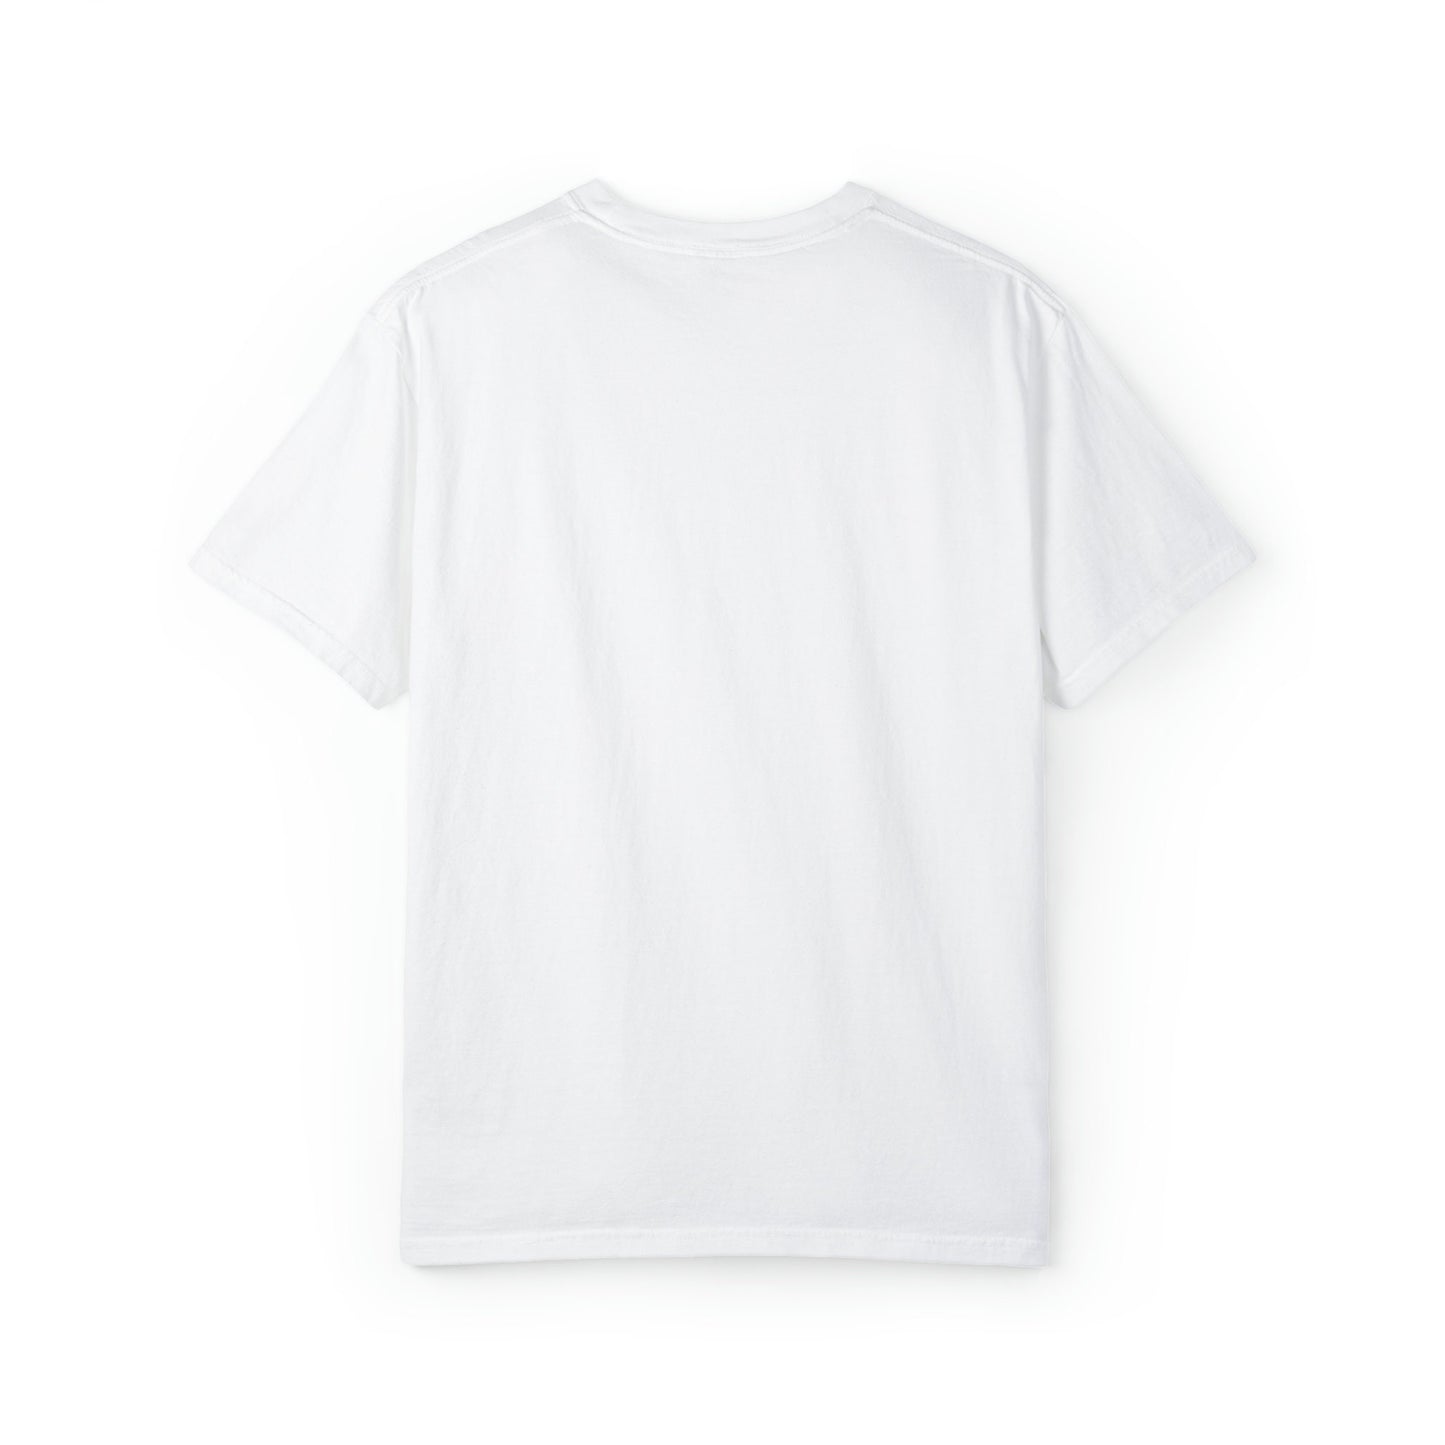 SUNSOAK "PANTONE" T-Shirt